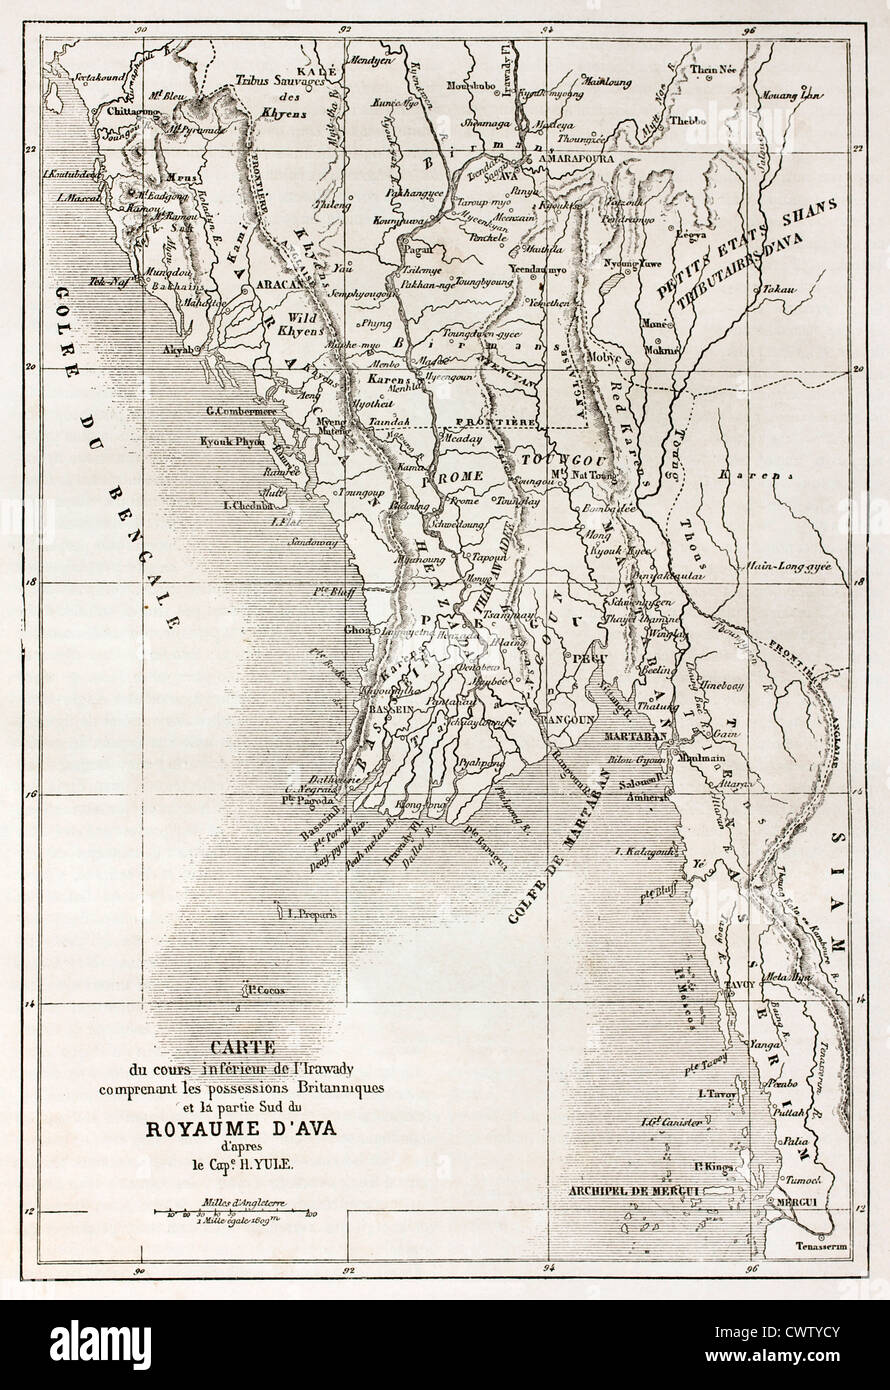 Ava kingdom territory (today Burma) old map Stock Photo